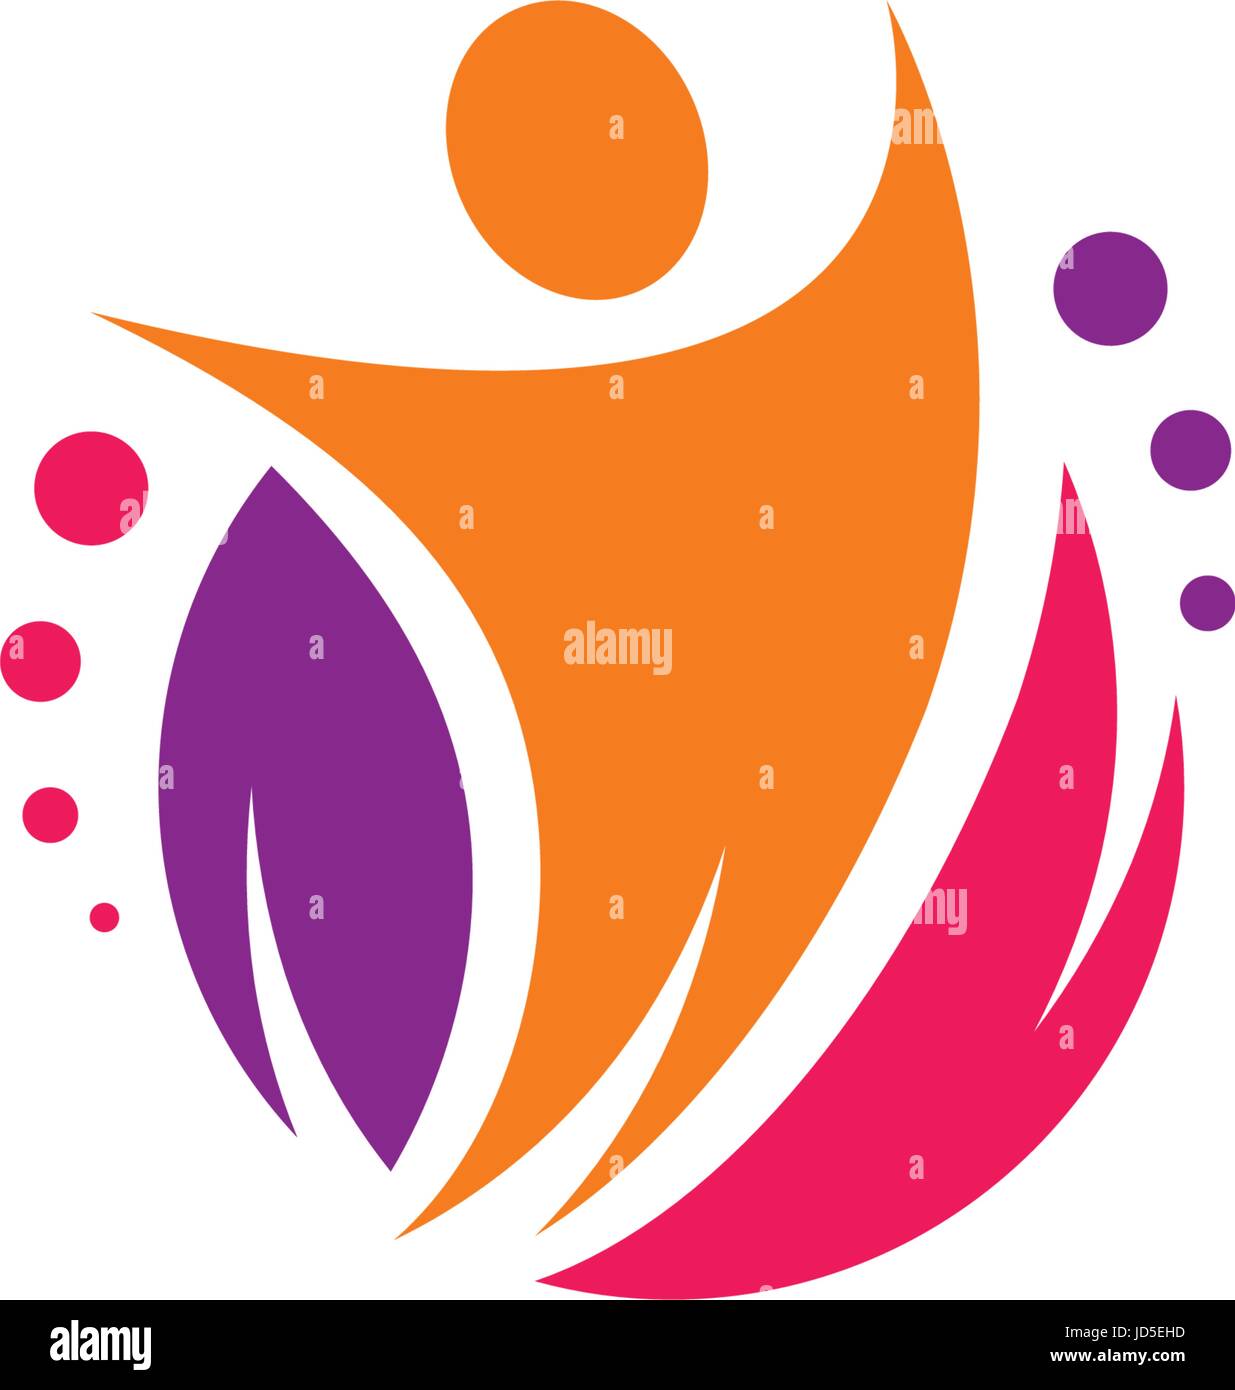 Dynamische festliche Vektor-Logo. Bunte abstrakte Form mit einem Volk, Blatt- und Kreise. Fröhlich und unterhaltsam Illustration mit dem Bild eines Führers Stock Vektor